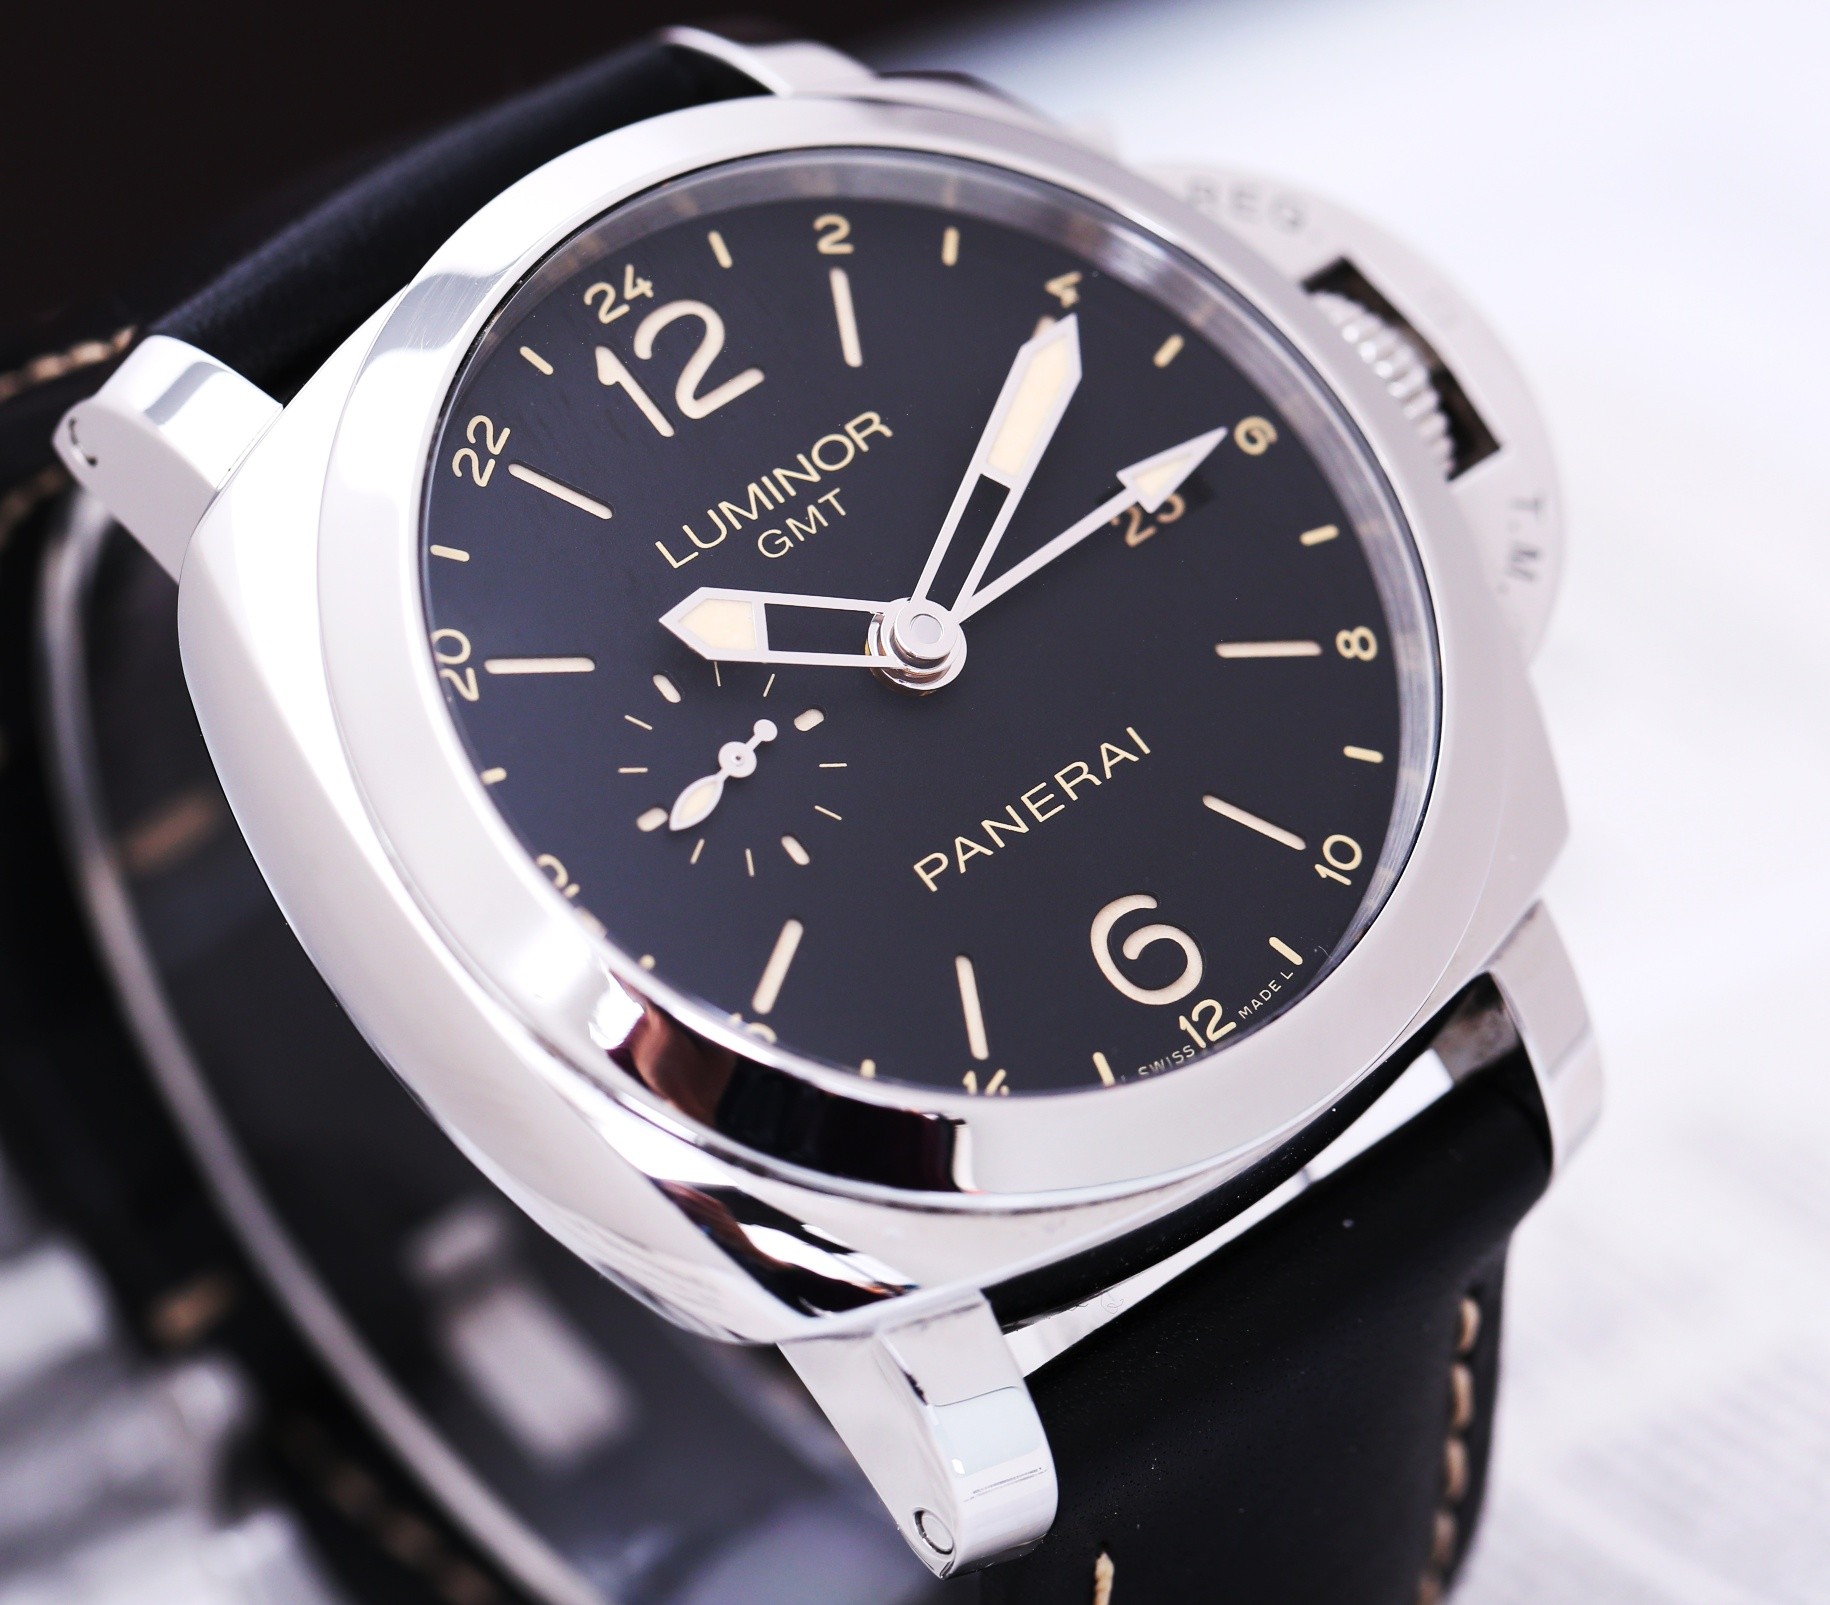 沛纳海1860手表价格哪位比较清楚?,沛纳海手表一般多少钱